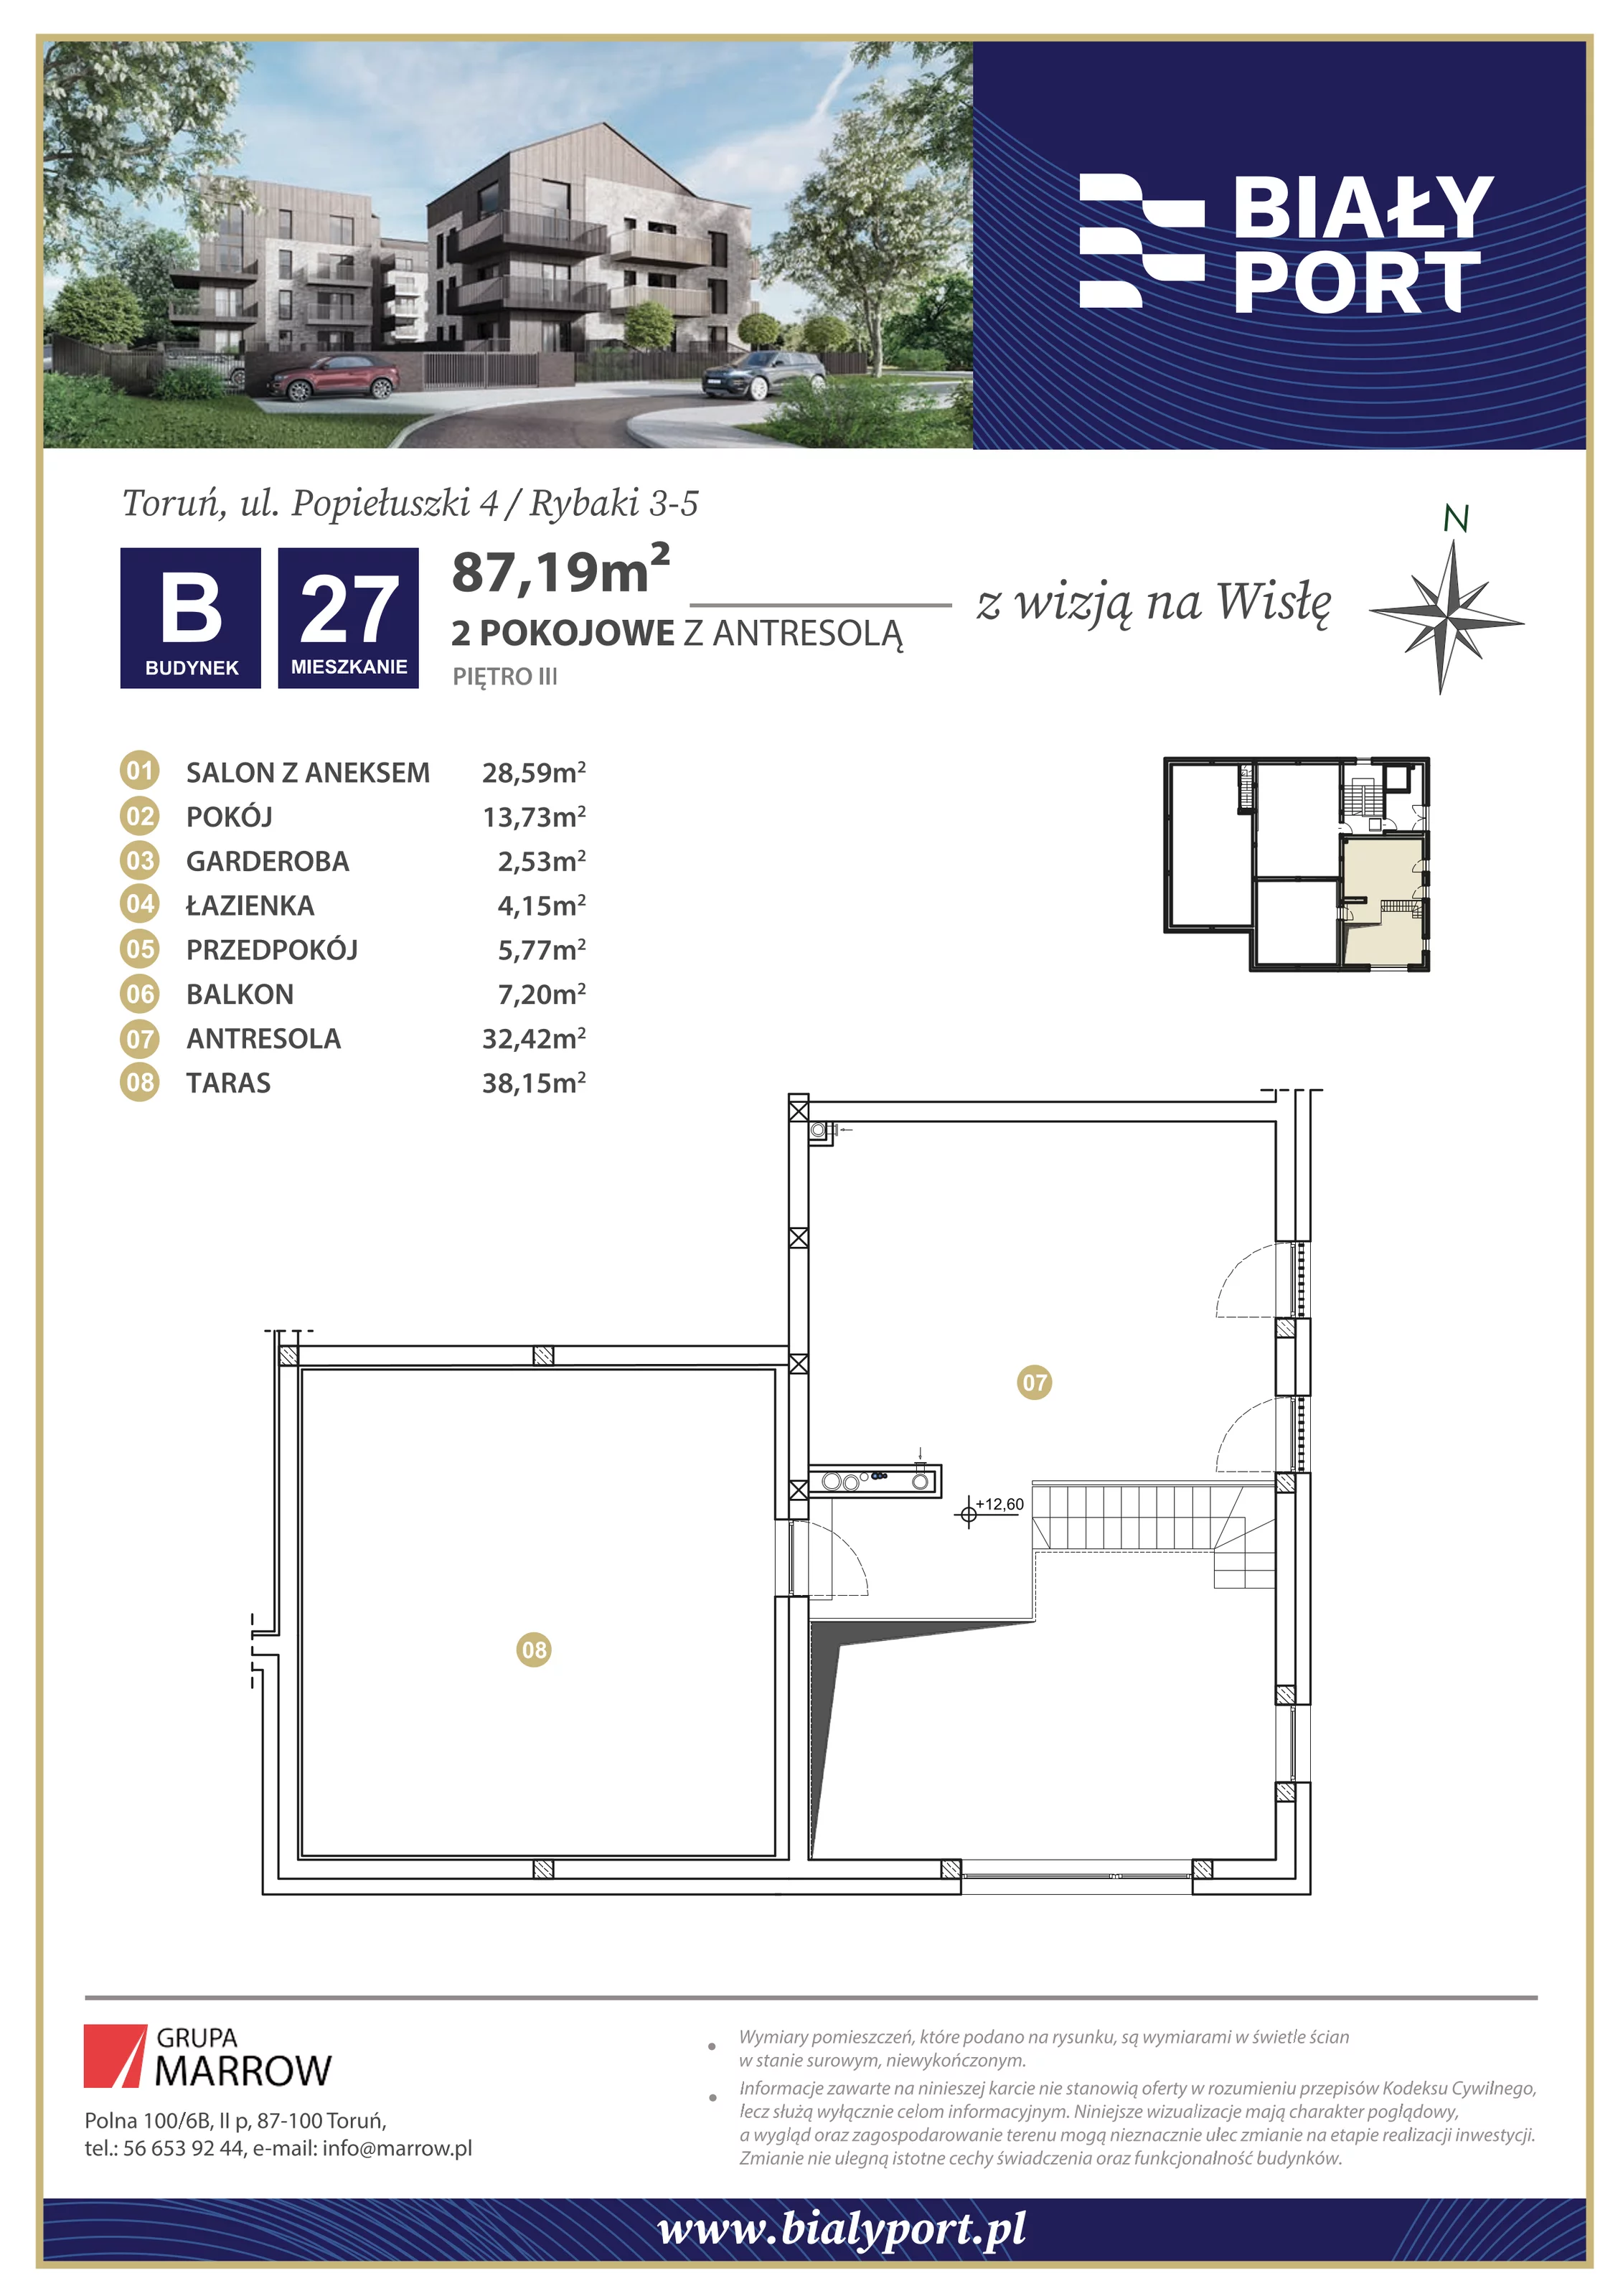 Mieszkanie 87,19 m², piętro 3, oferta nr 27, Biały Port, Toruń, Rybaki, ul. Popiełuszki 4